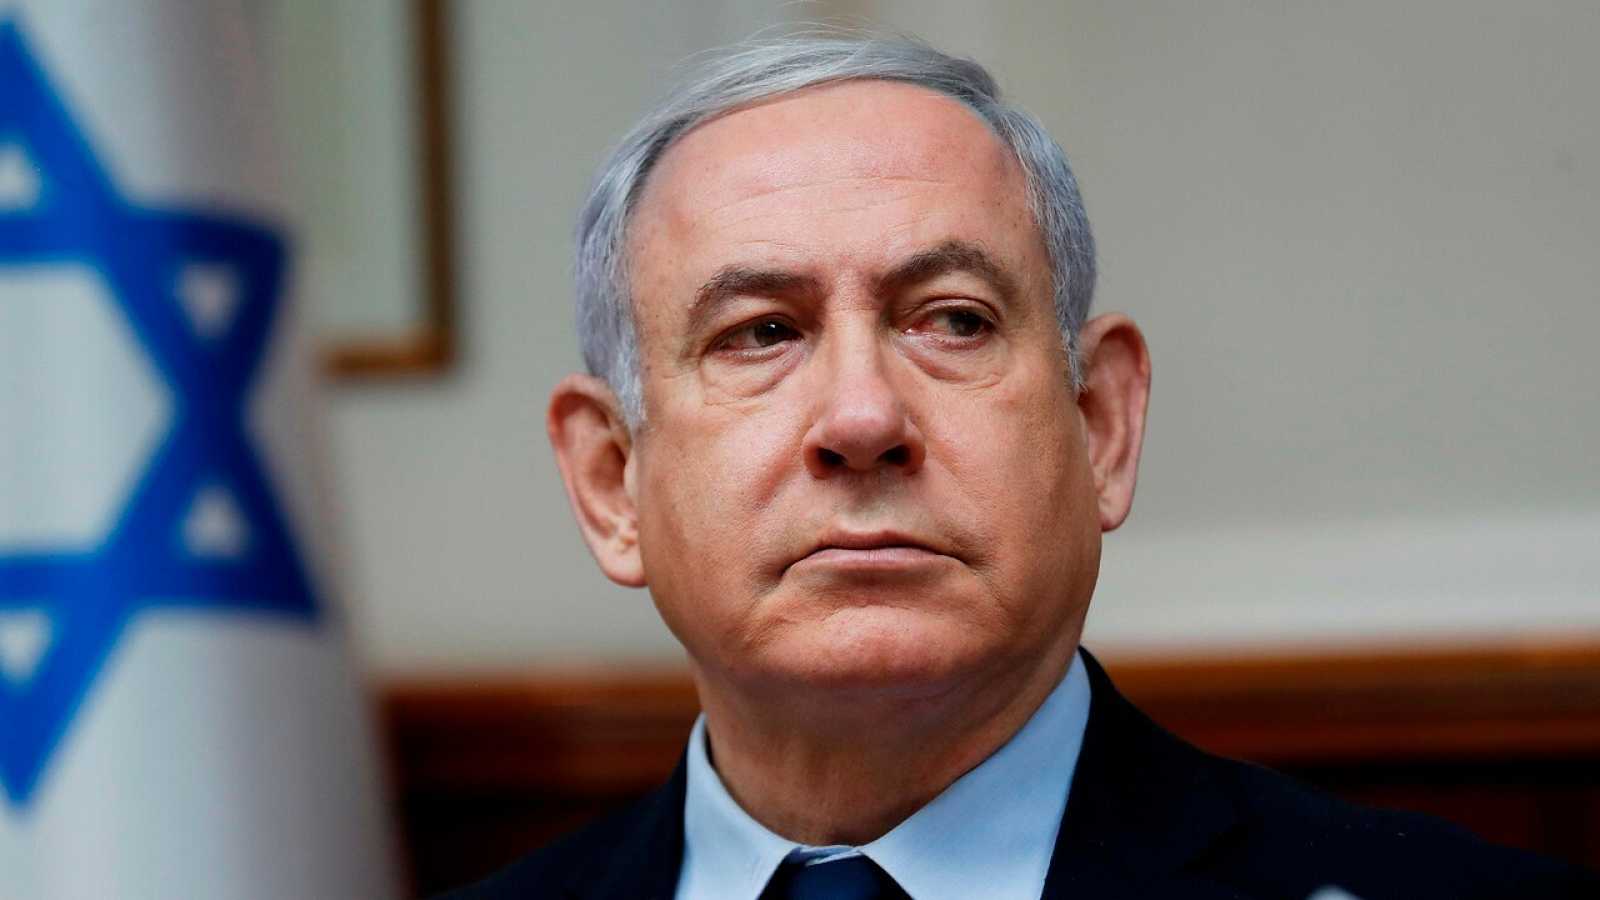 Netanyahu perfila estrategia israelí ante una aproximación de EE.UU Irán